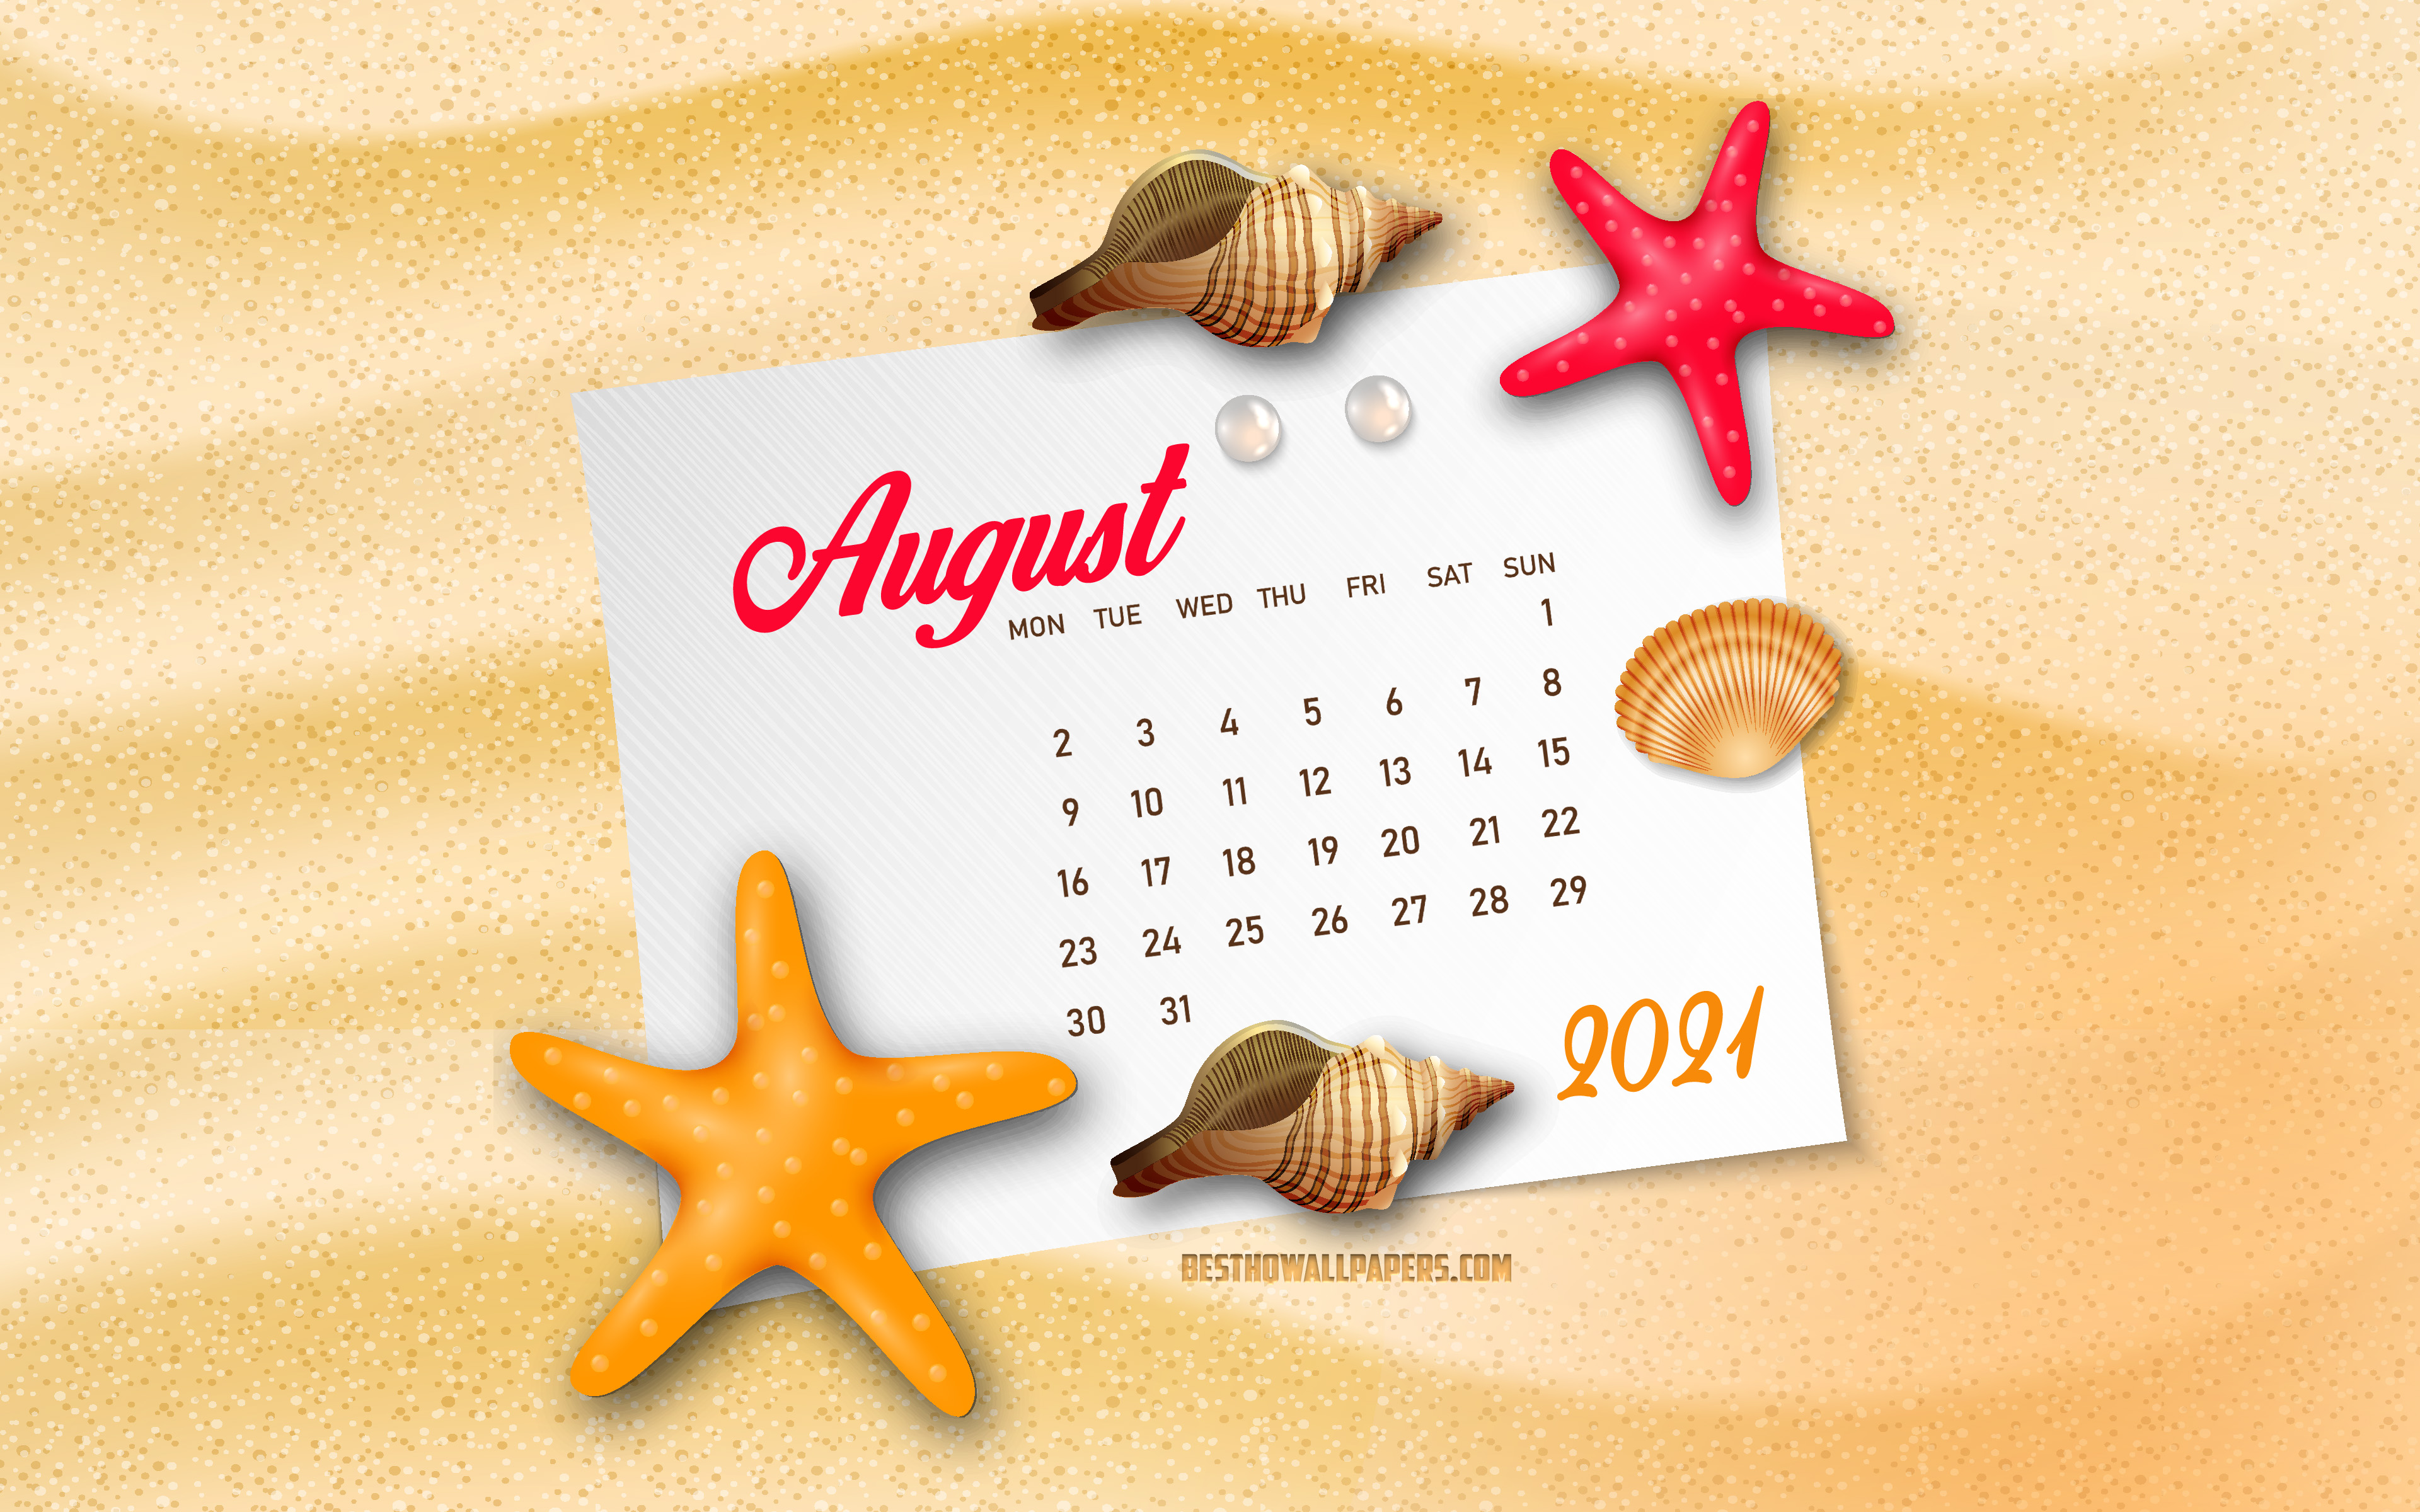 Обои календарь август 2021